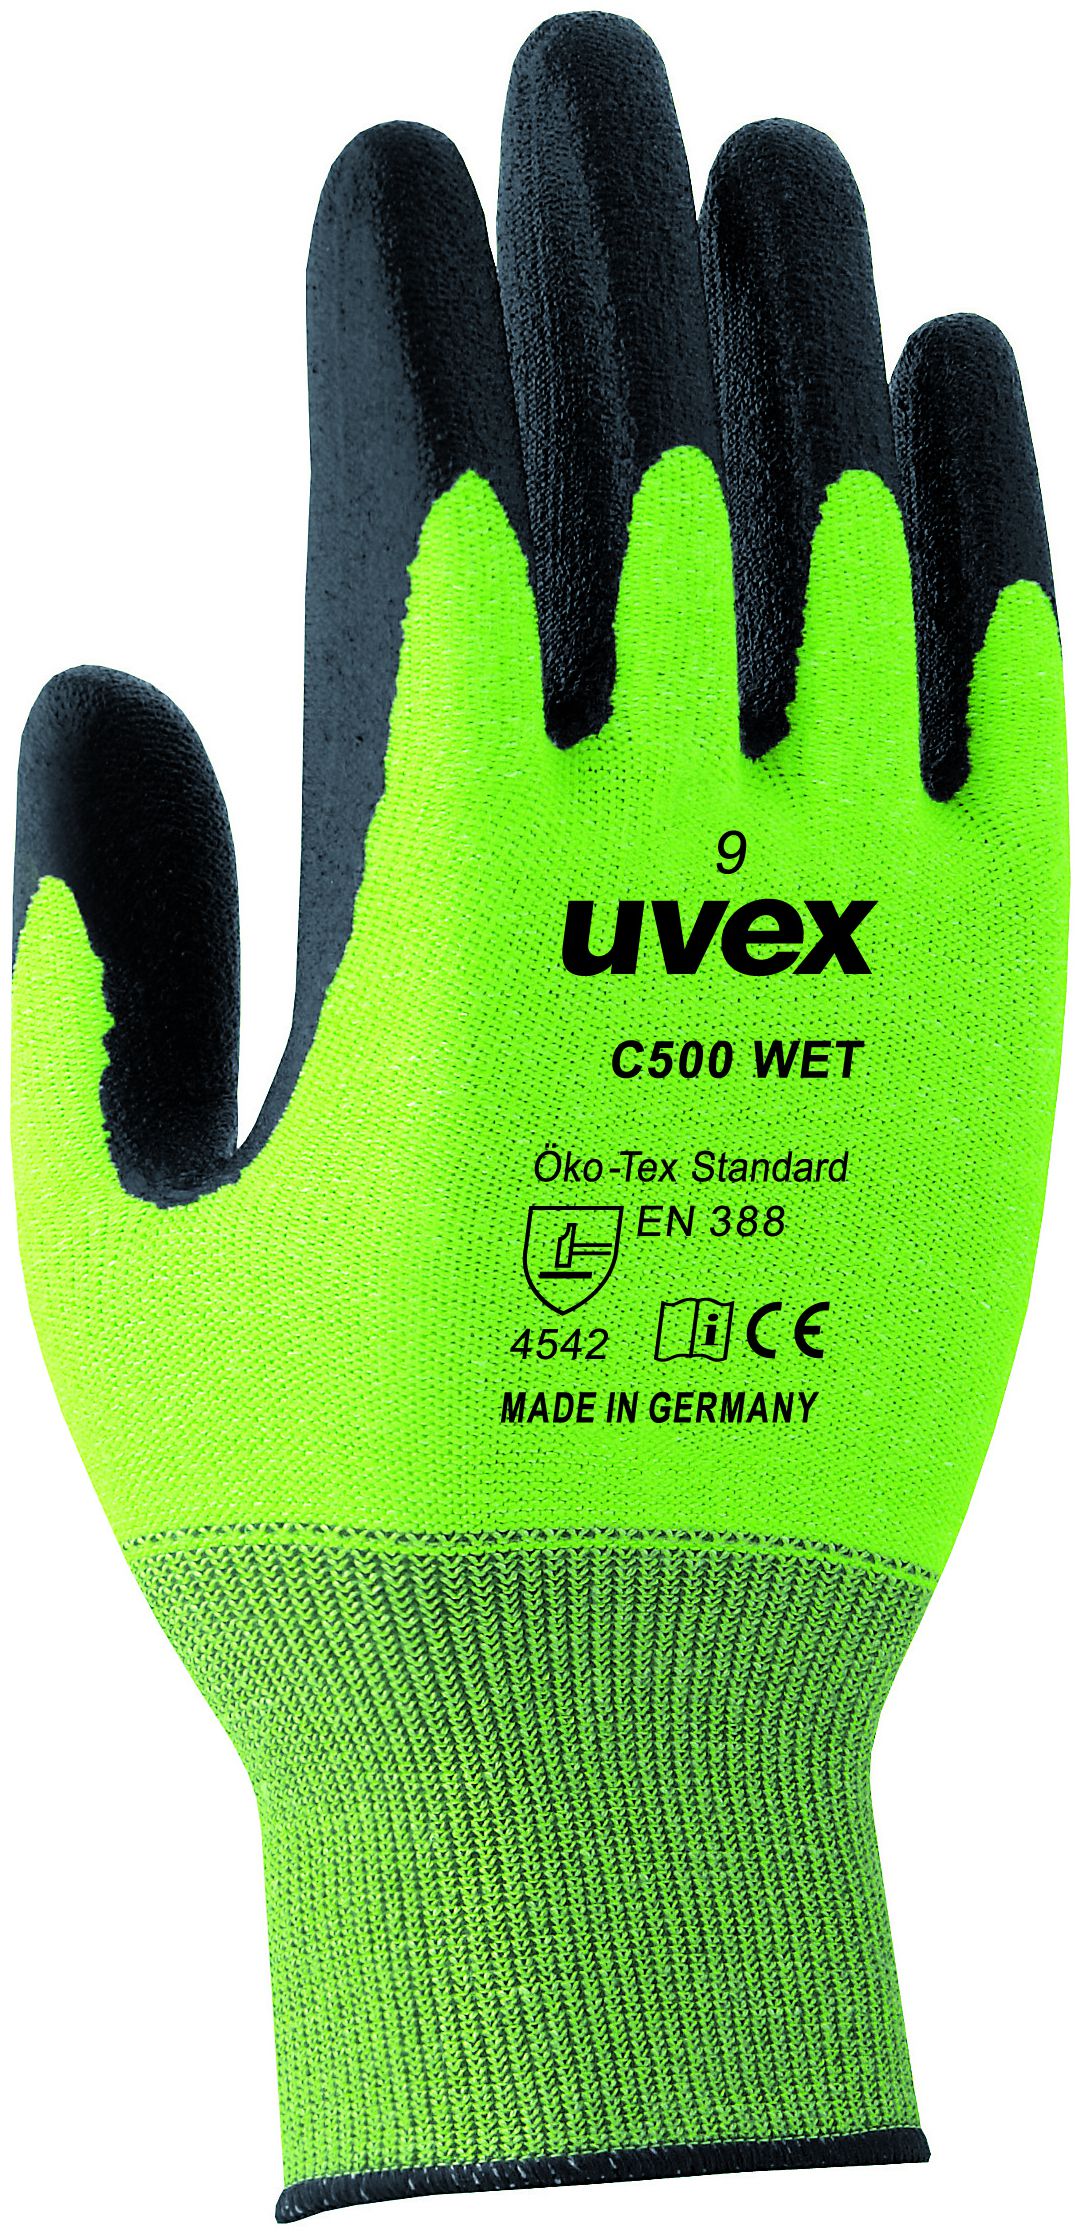 UVEX Schnittschutzhandschuh, C500 WET Gr.10, lime/anthrazit, sehr hoher Schutz - Arbeitsschutz